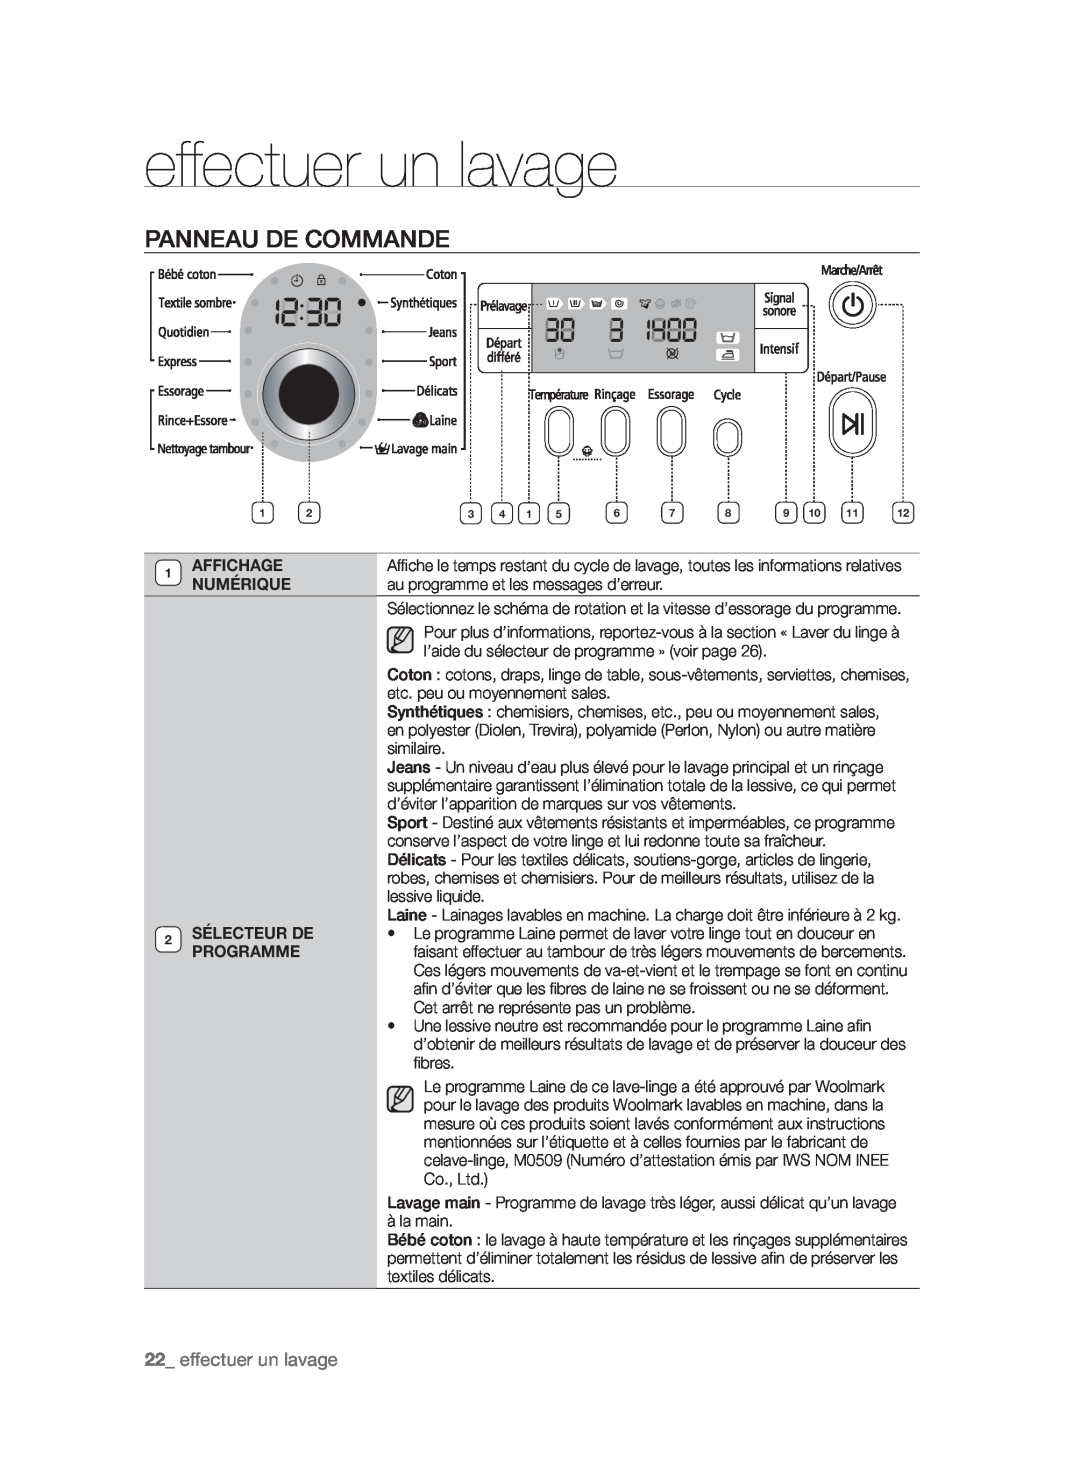 Samsung WF9902AWE/XEF manual Panneau De Commande, effectuer un lavage, Affichage, Numérique, Sélecteur De, Programme 